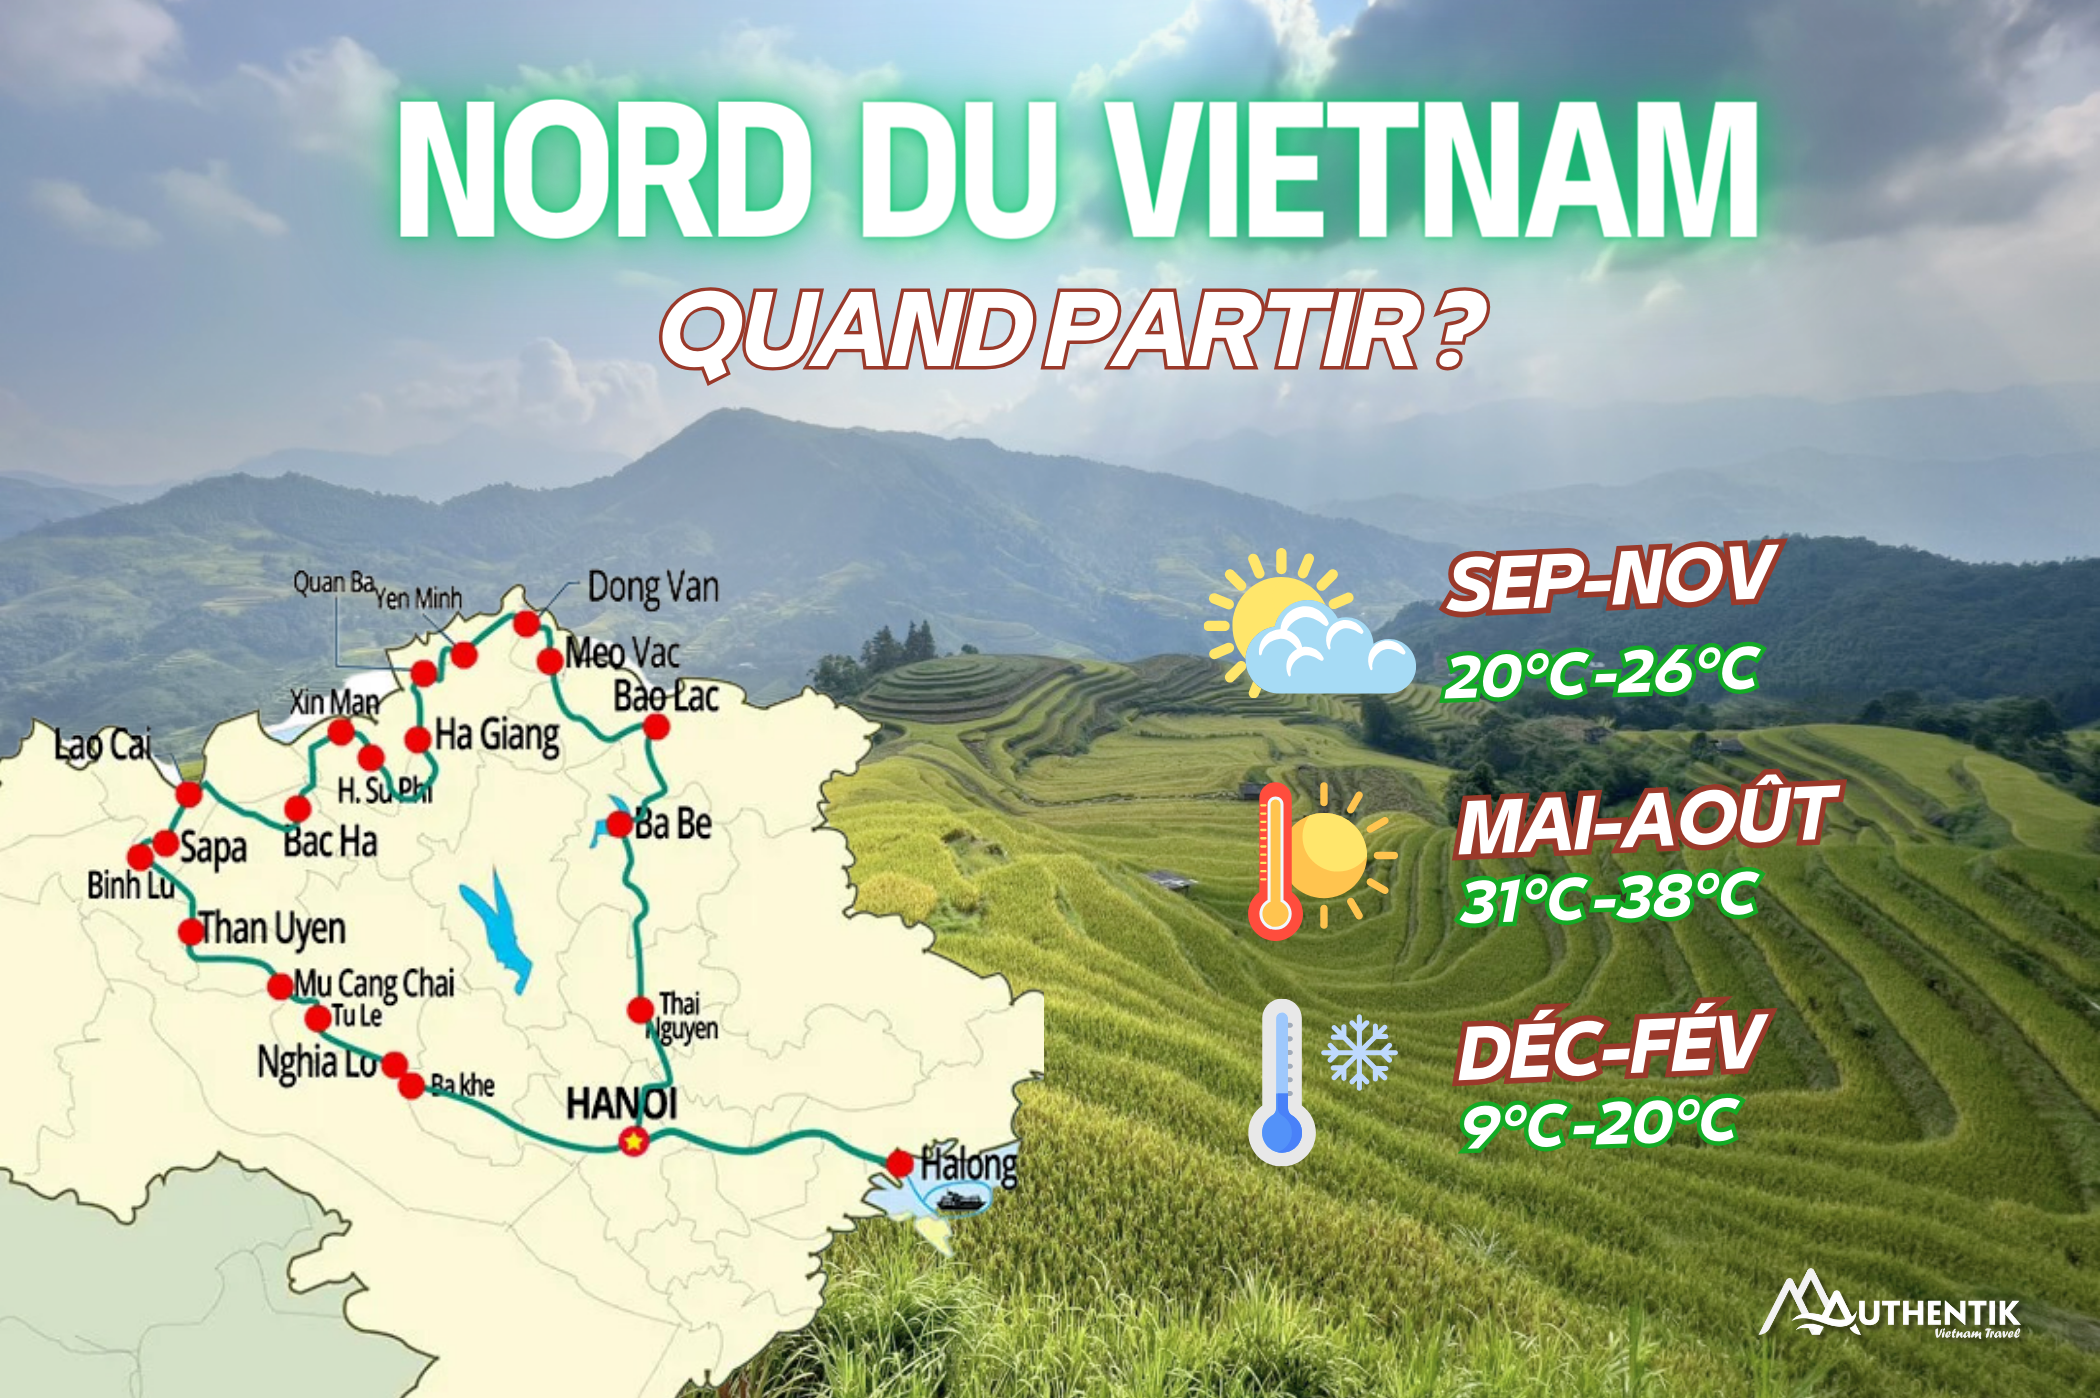 Quand partir au Nord du Vietnam ? Tout savoir sur le climat